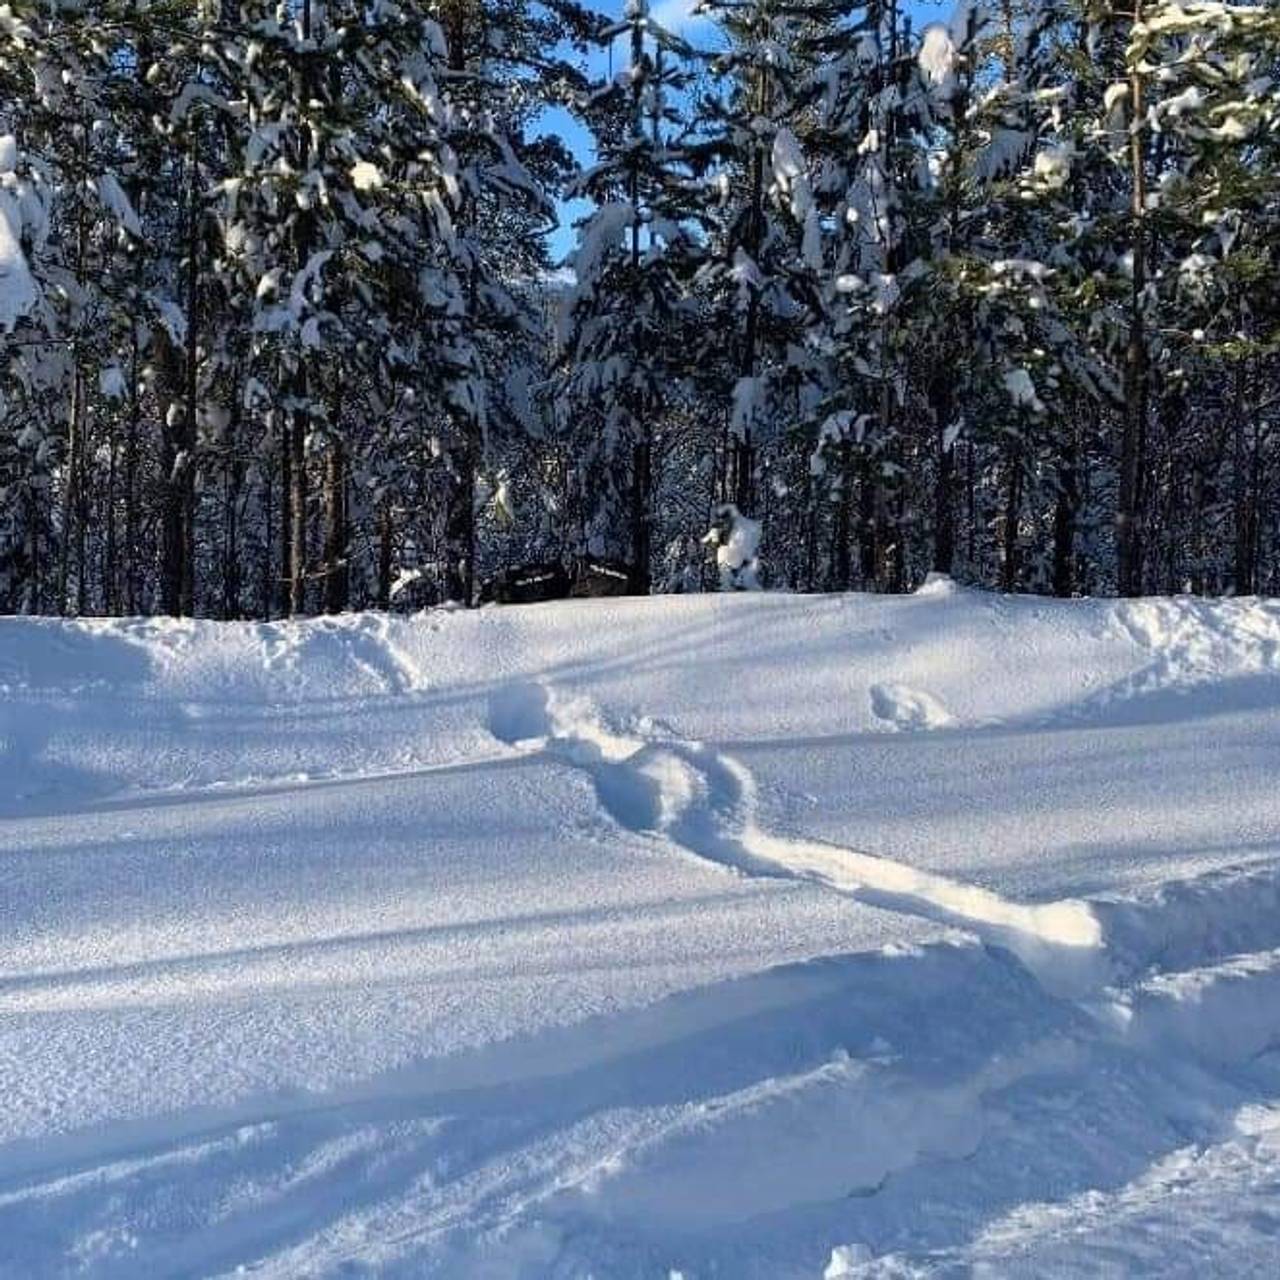 Spor i snøen etter et akebrett som ble brukt i et smuglingsforsøk til å frakte hasj over grensa.